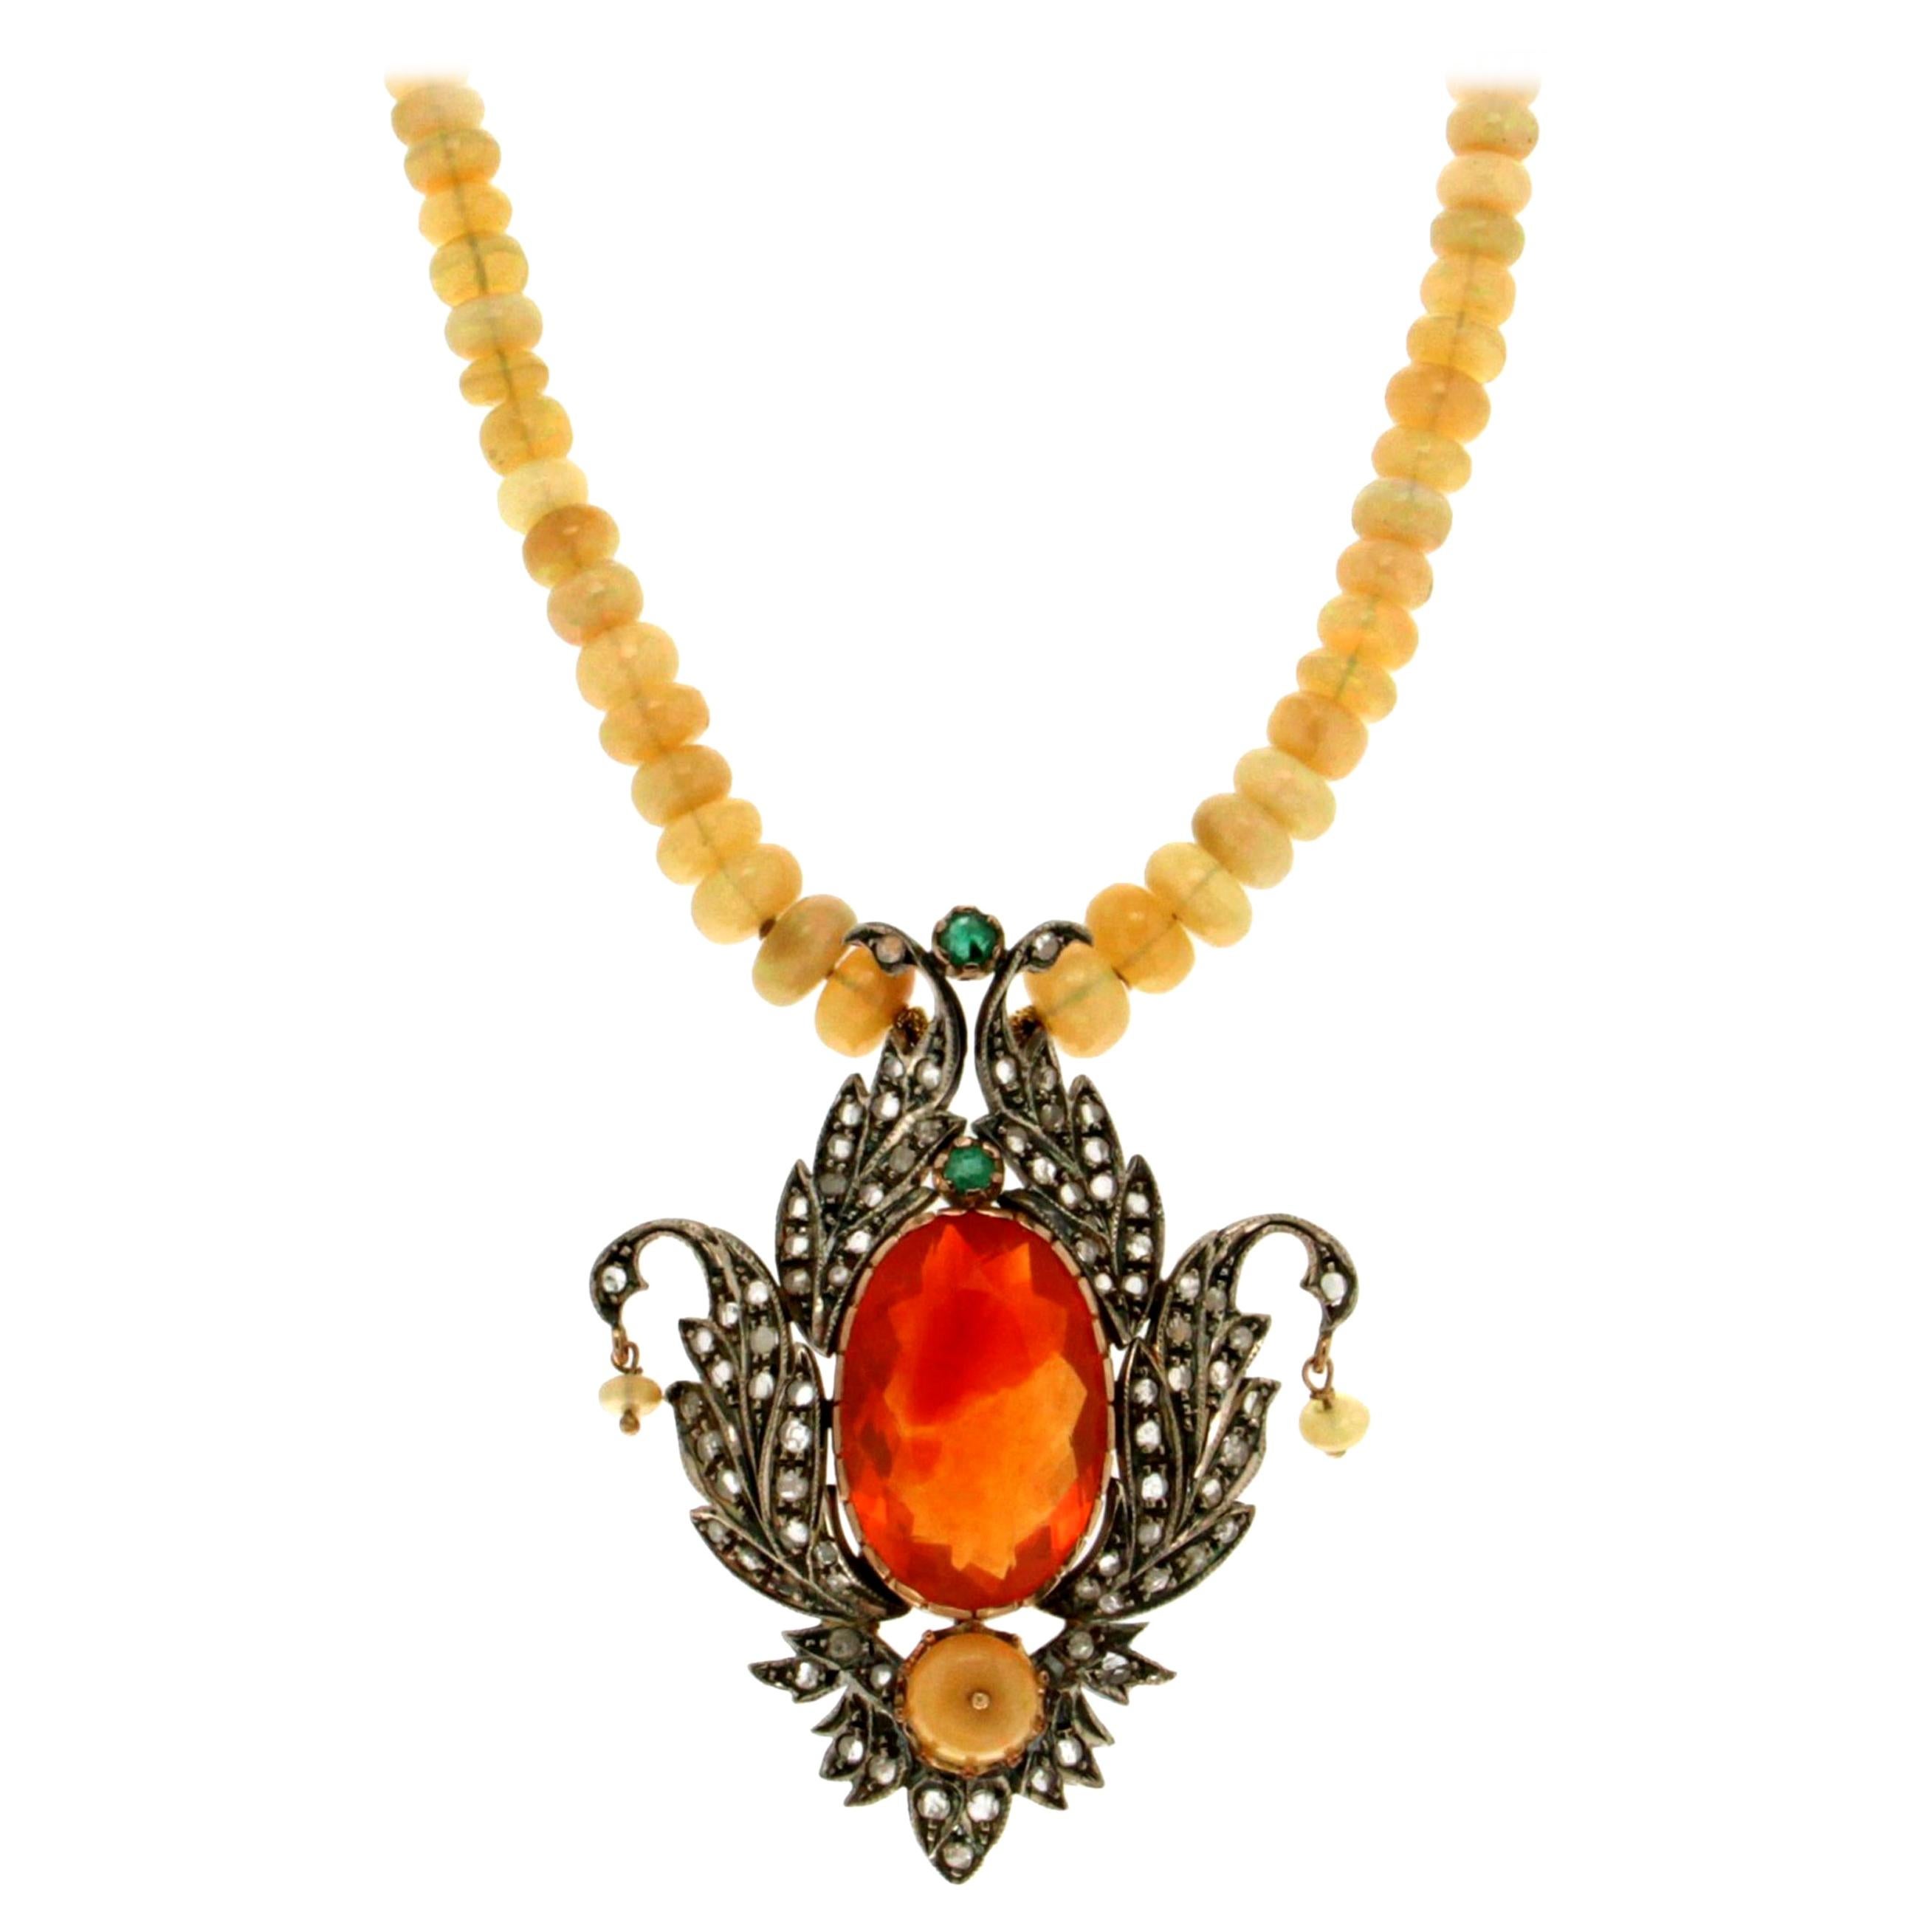 Halskette mit australischem Opal, 14 Karat Gelbgold, Feueropal, Handarbeit